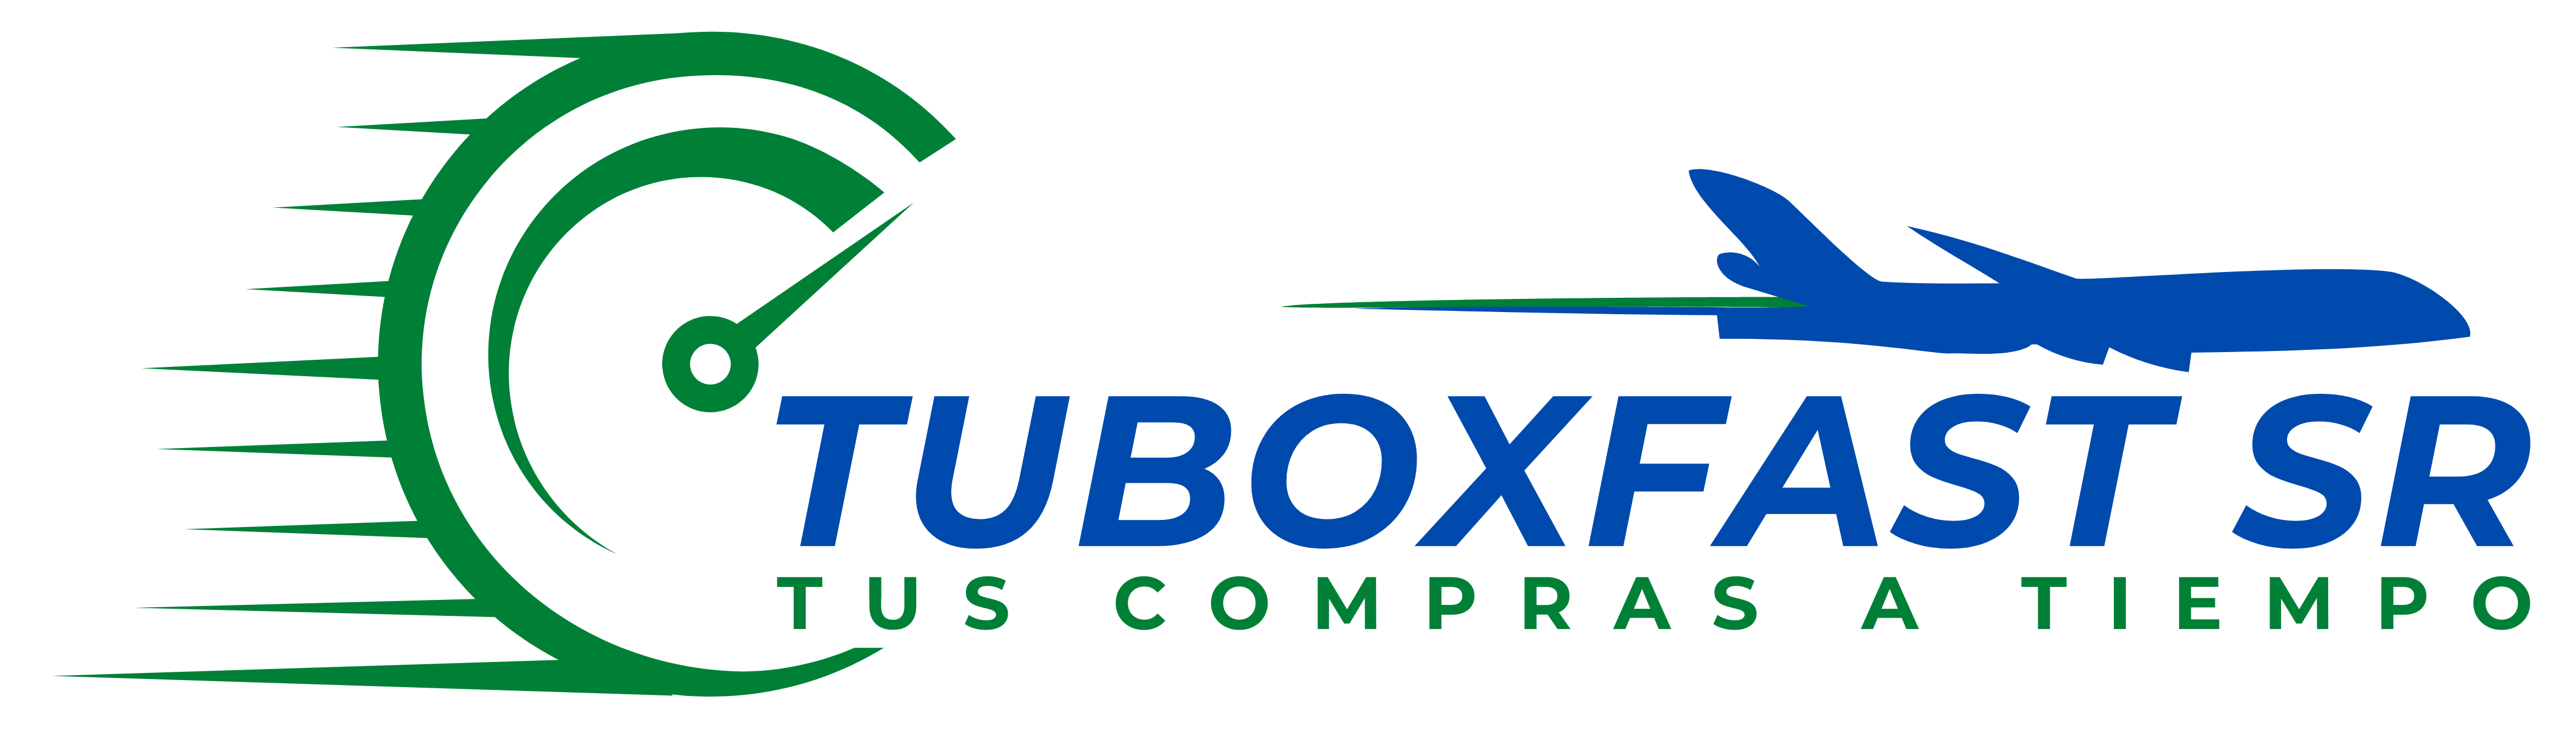 Tuboxfast SR Logo